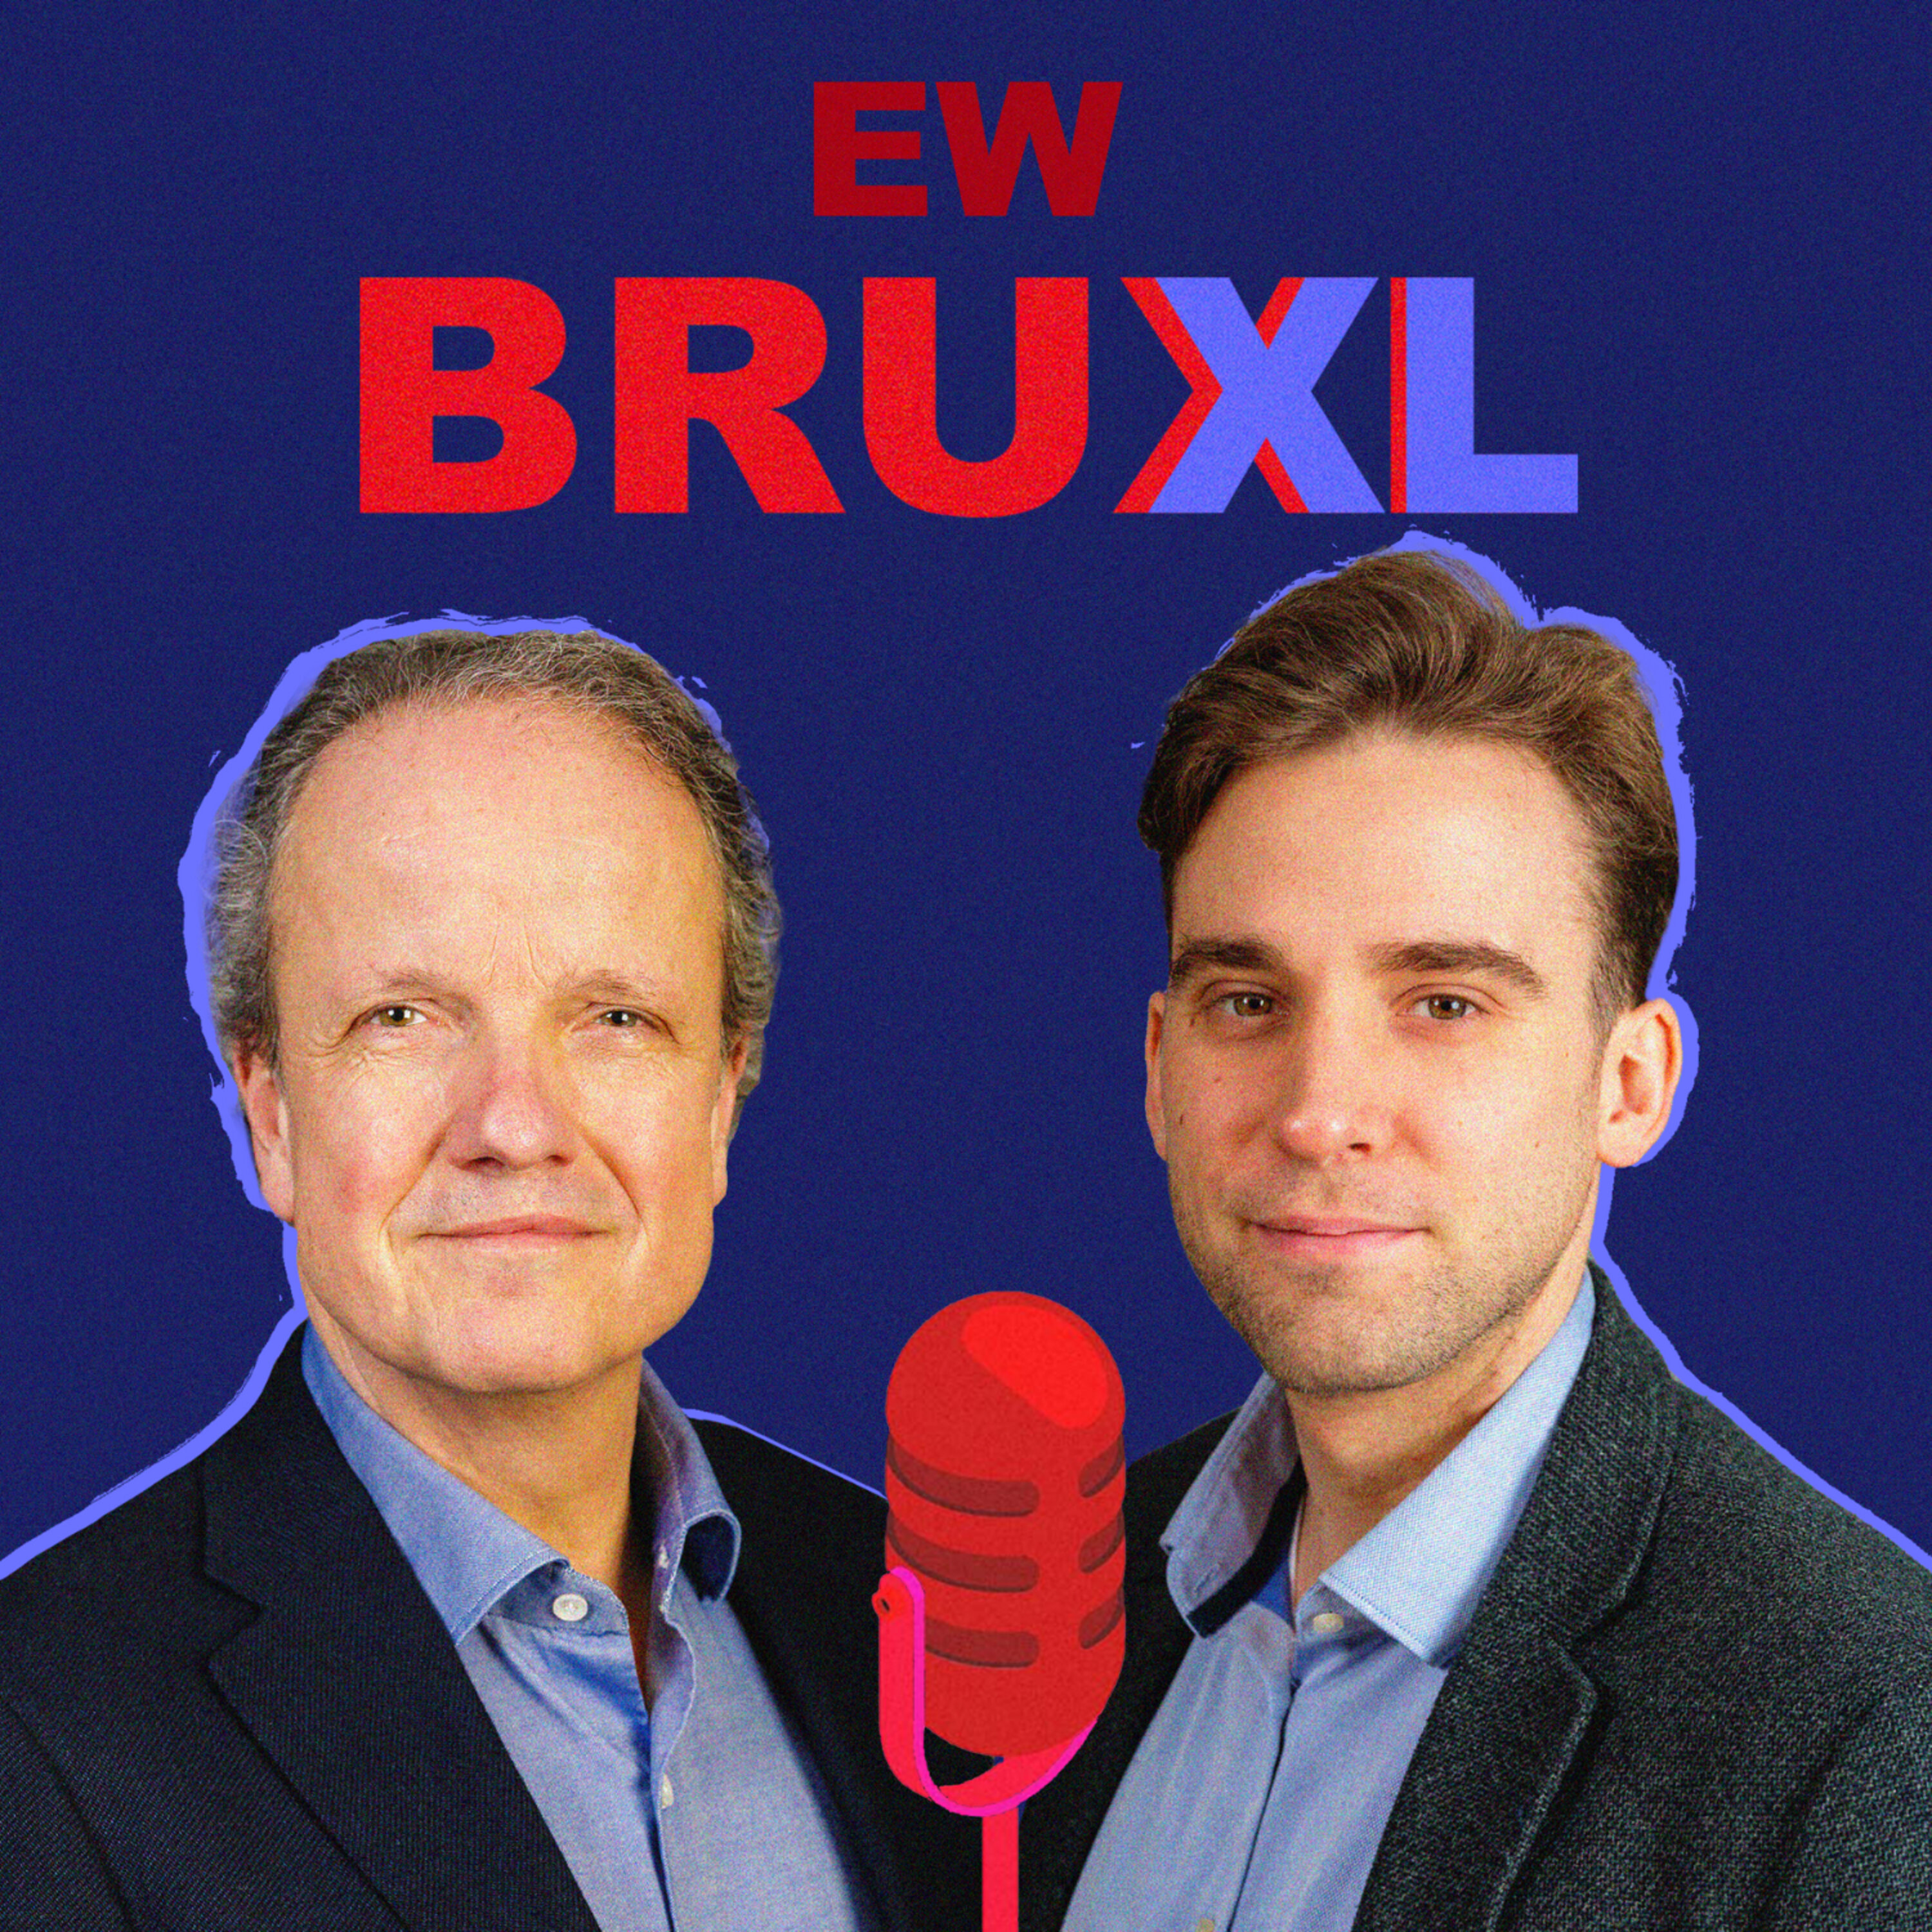 EW BruXL podcast show image